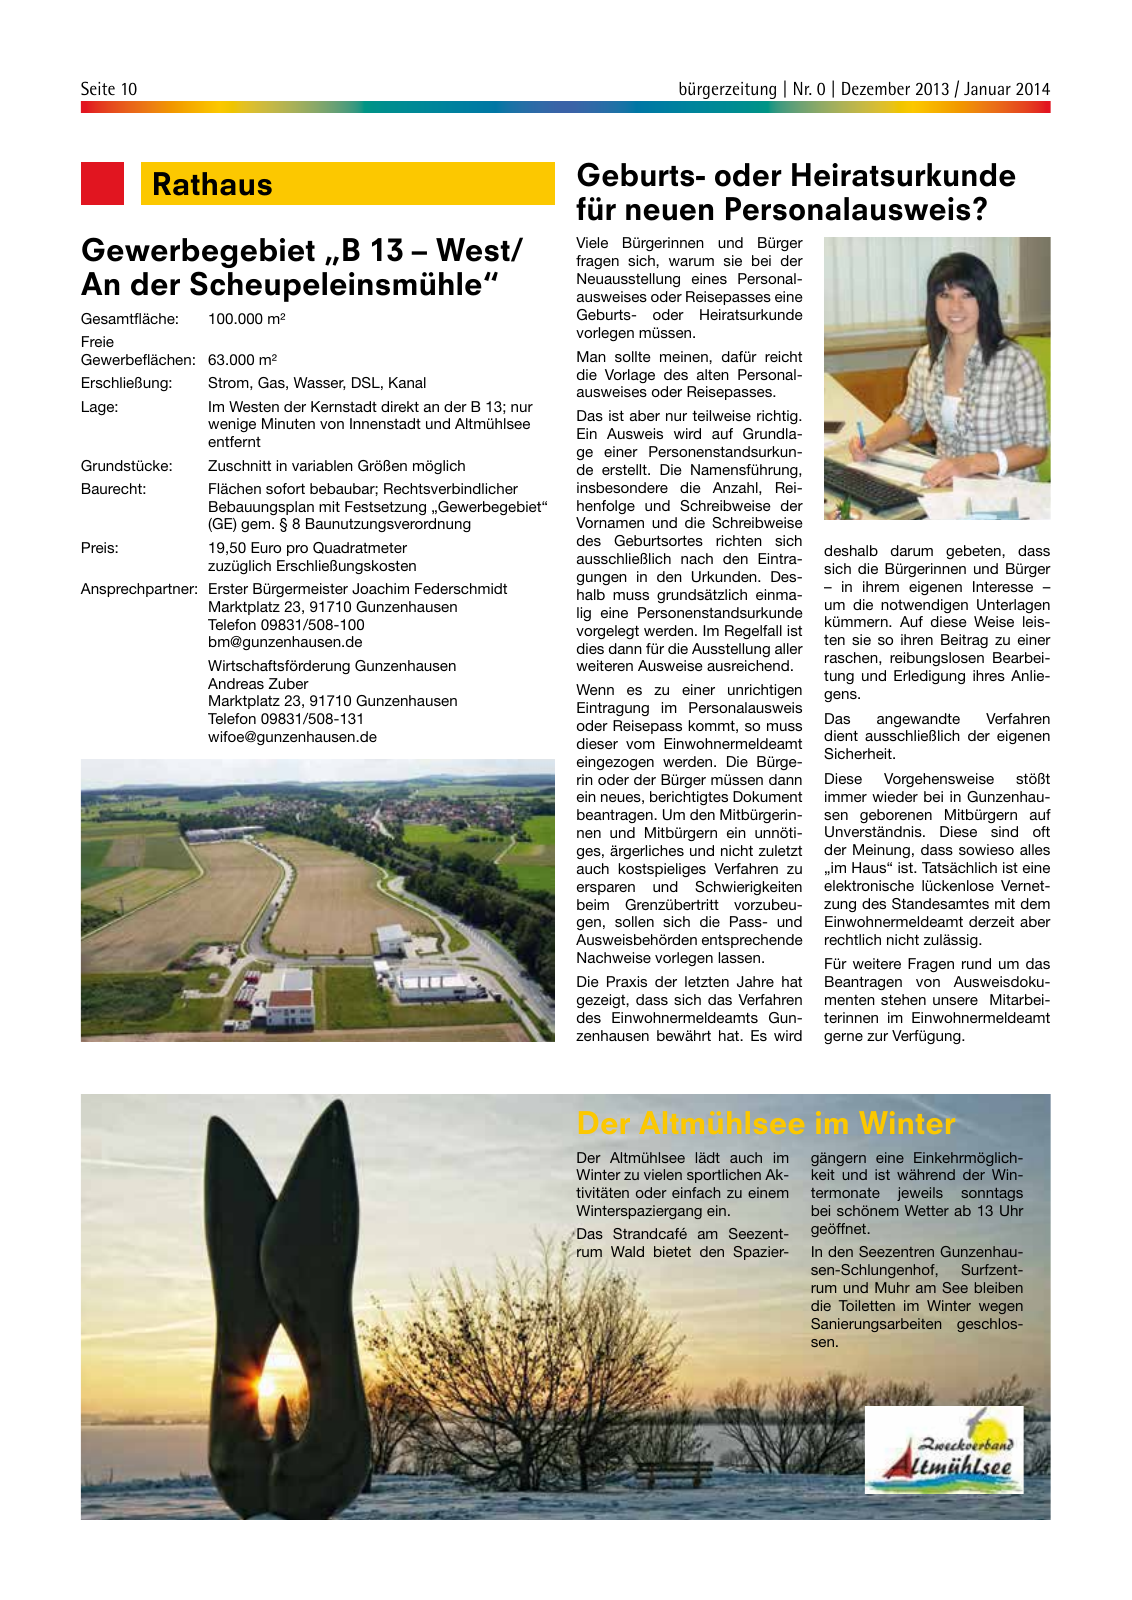 Vorschau bürgerzeitung Nr. 0 Dezember 2013 Januar 2014 Seite 10